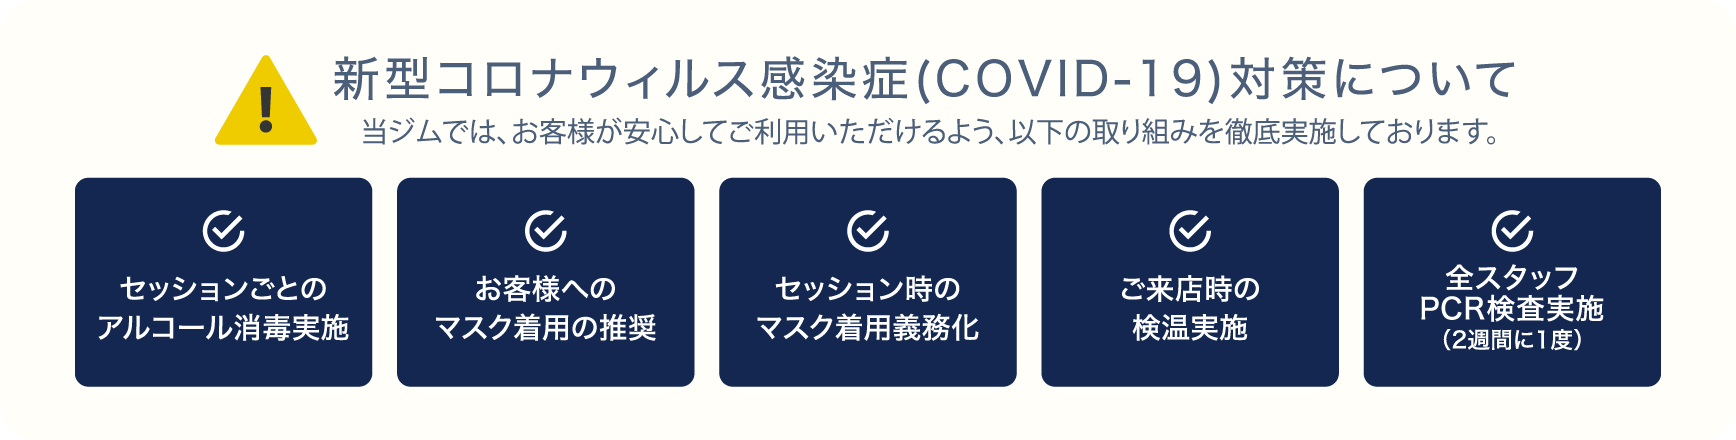 新型コロナウィルス感染症(COVID-19)対策について